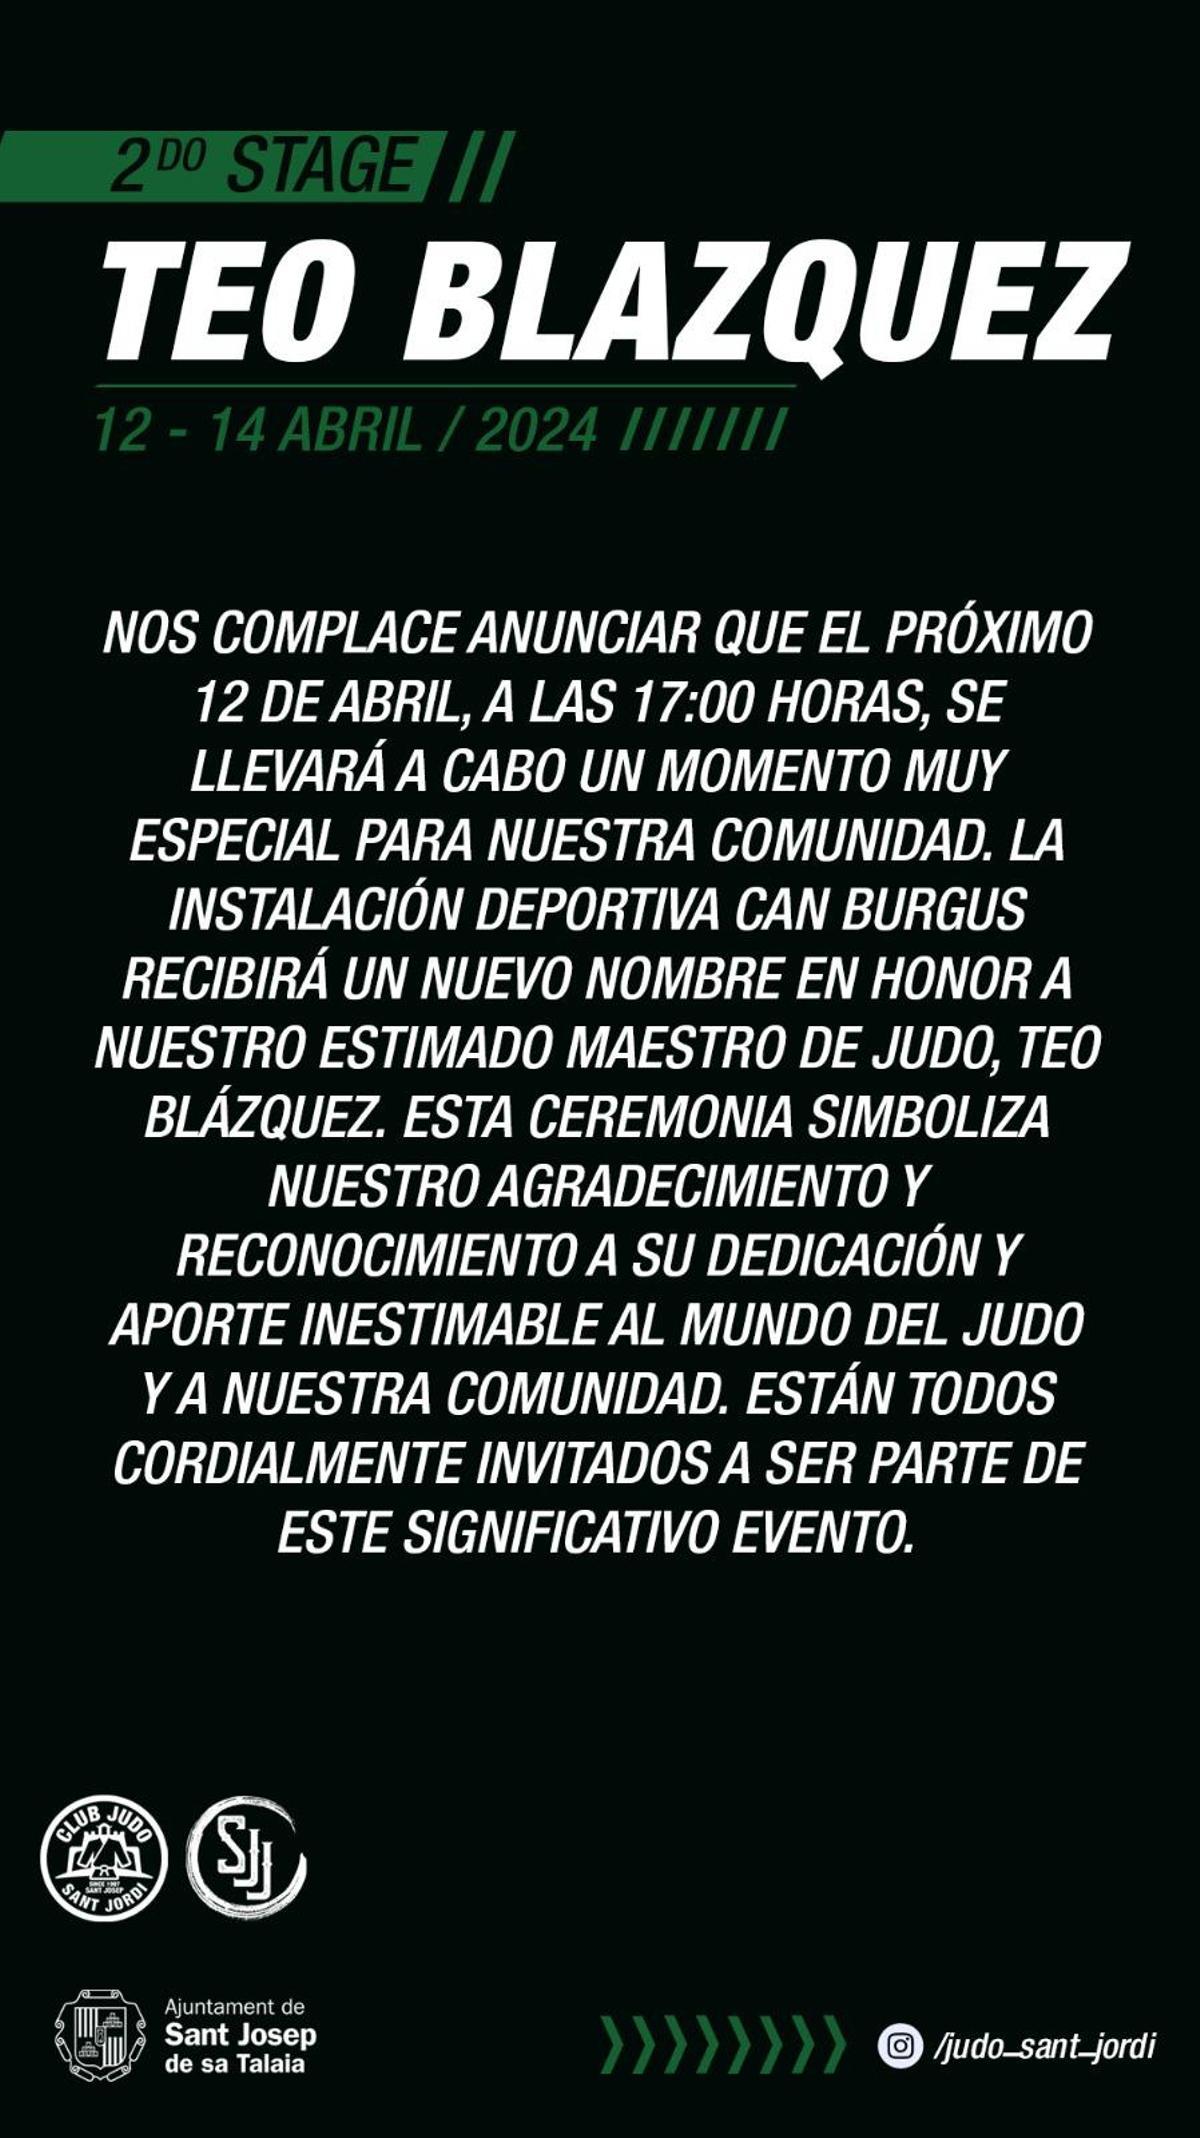 Anuncio del evento del club Judo Sant Jordi en Instagram